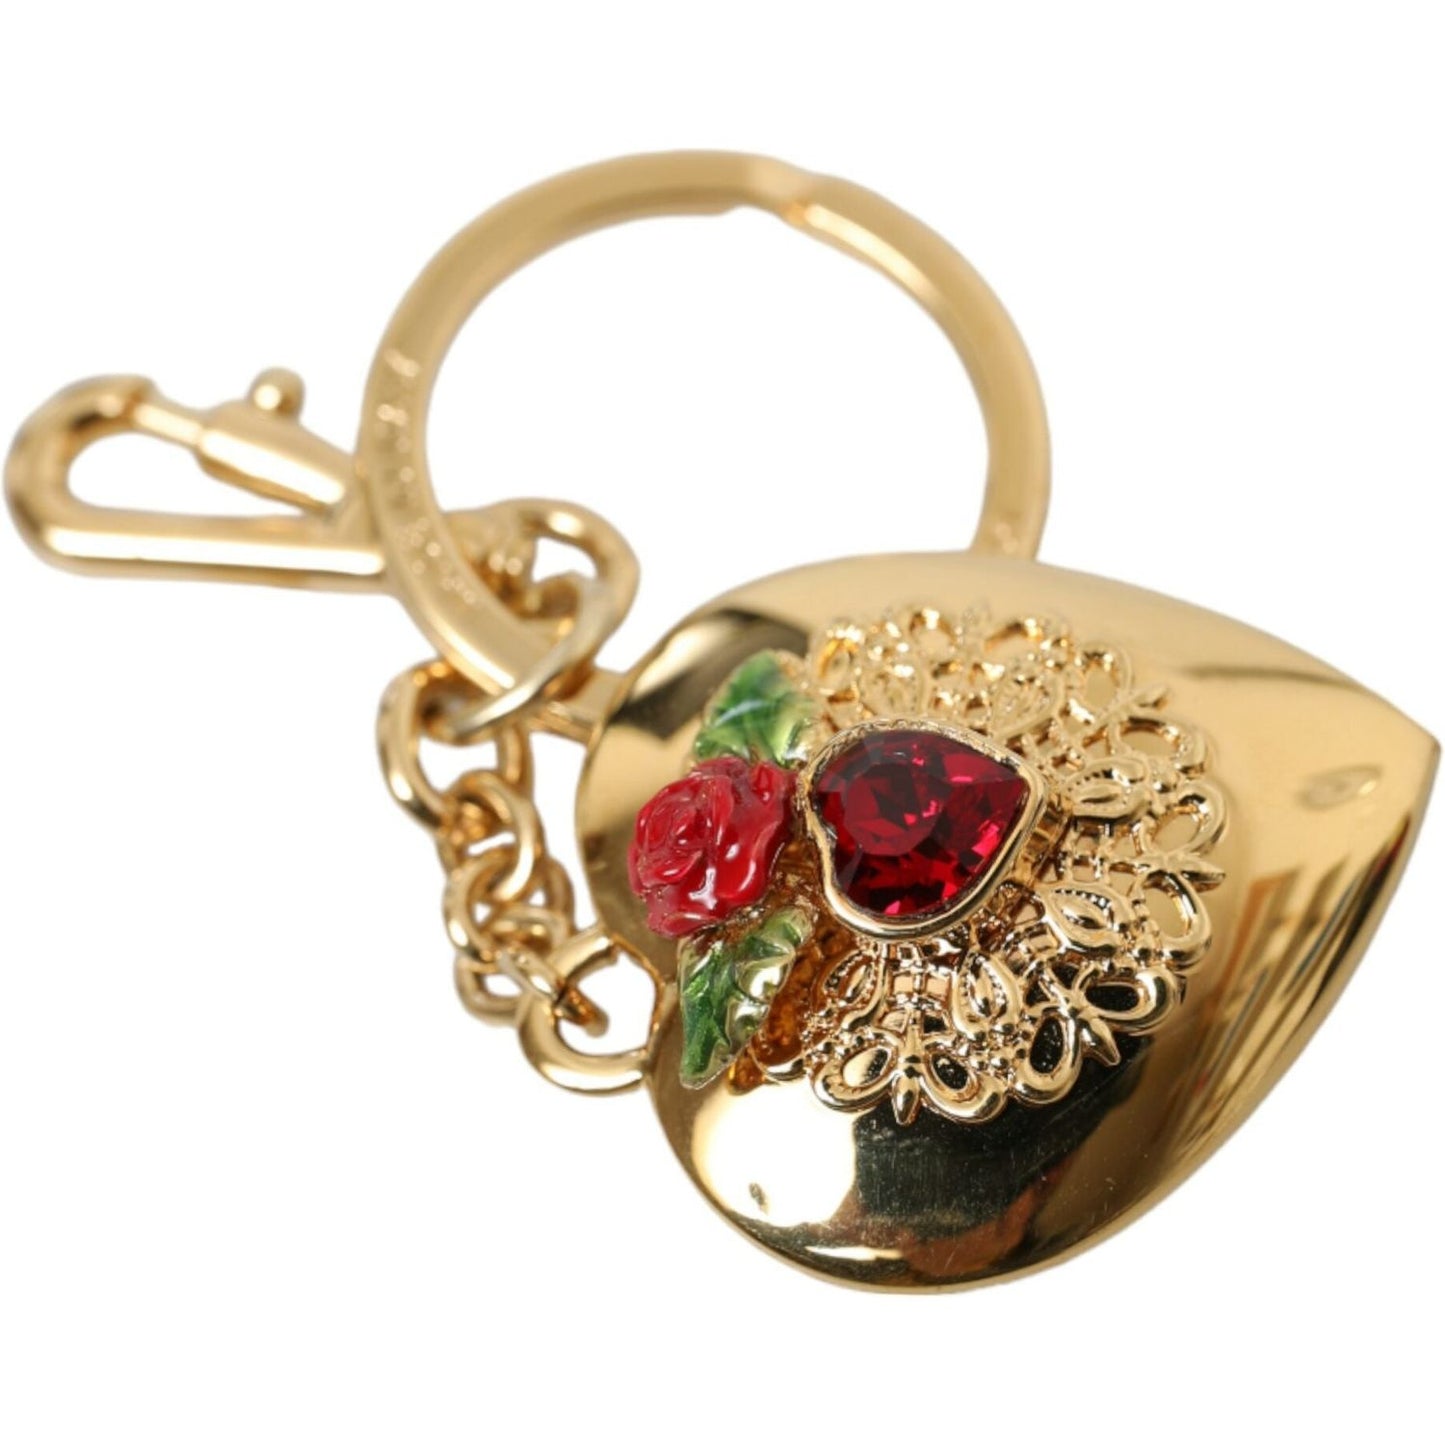 Dolce & Gabbana Metallic Gold Brass Heart Floral Pendant Keychain Keyring metallic-gold-brass-heart-floral-pendant-keychain-keyring